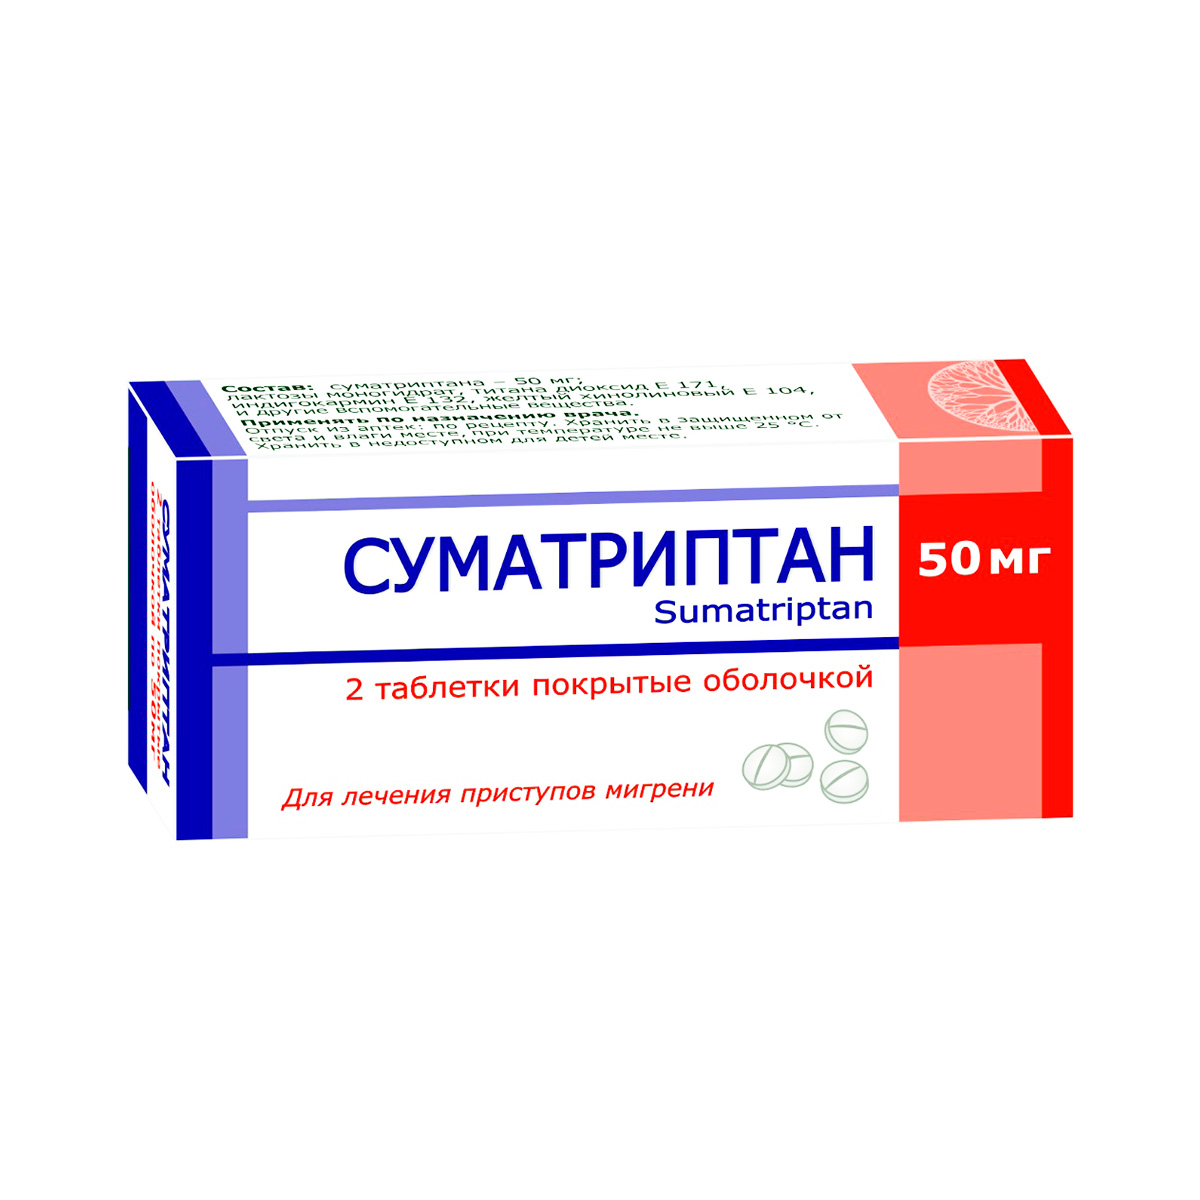 Суматриптан 50 мг таблетки покрытые пленочной оболочкой 2 шт